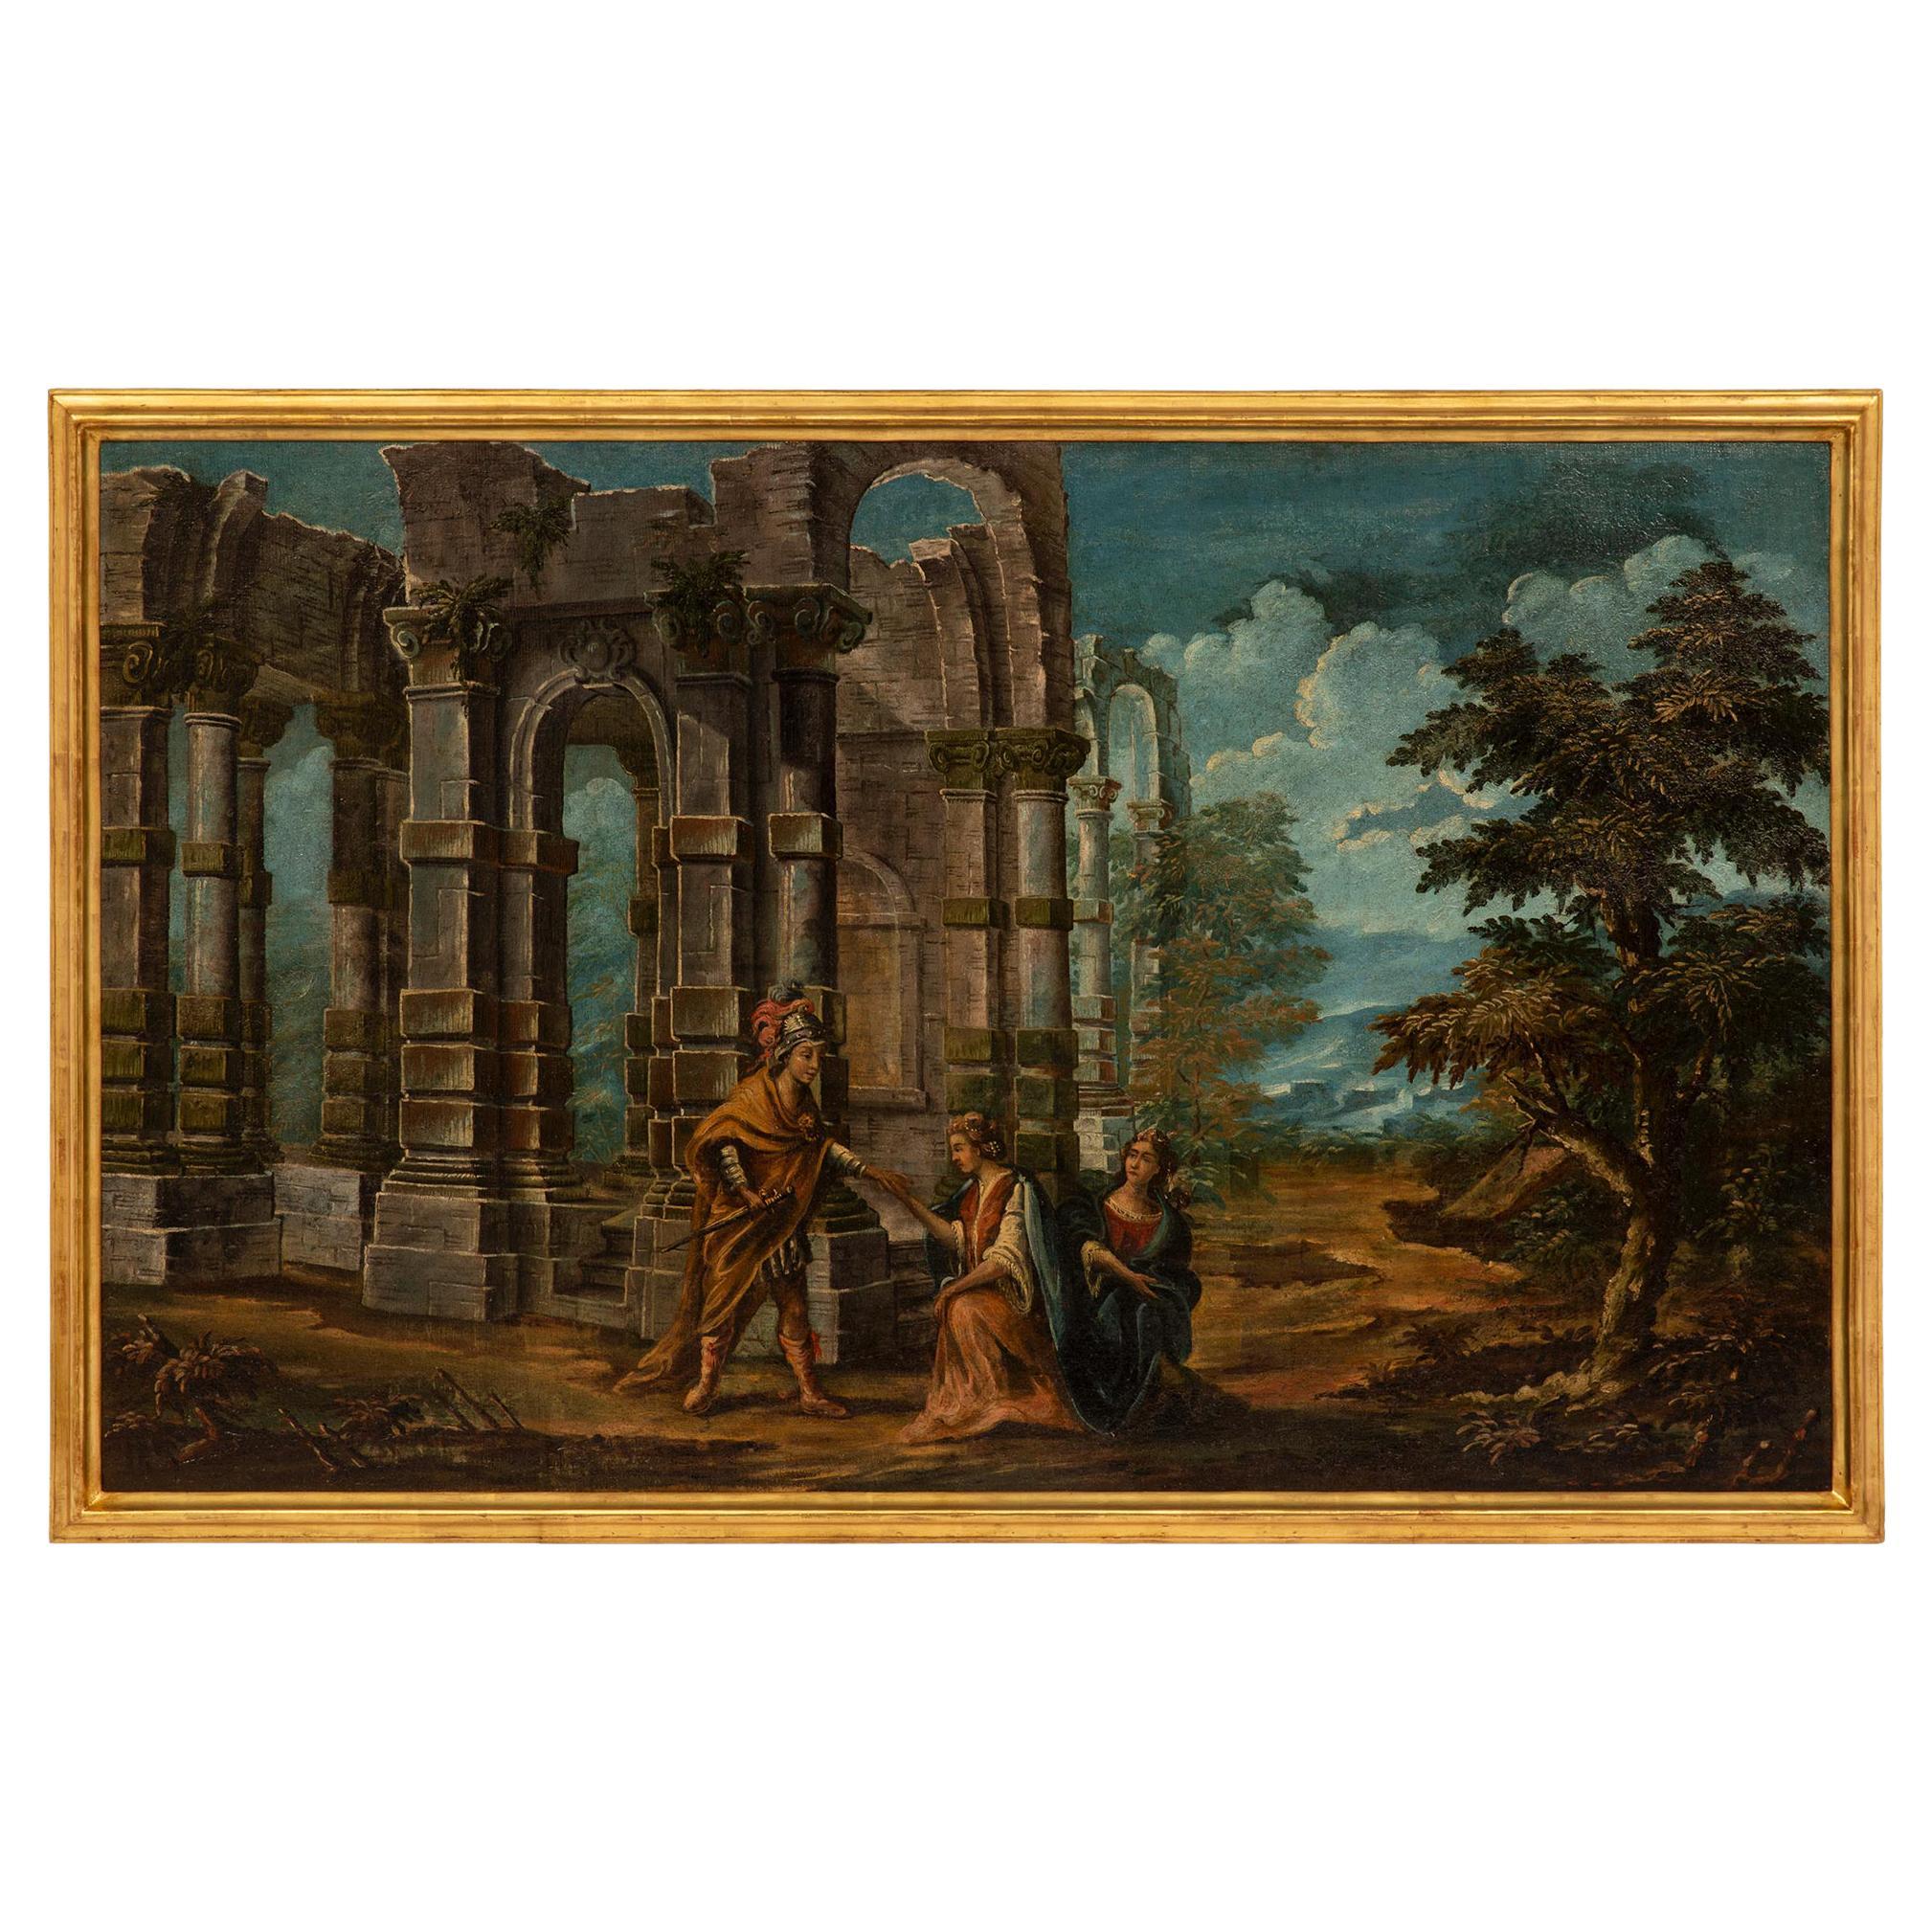 Huile sur toile italienne du 18ème siècle représentant des ruines et des personnages